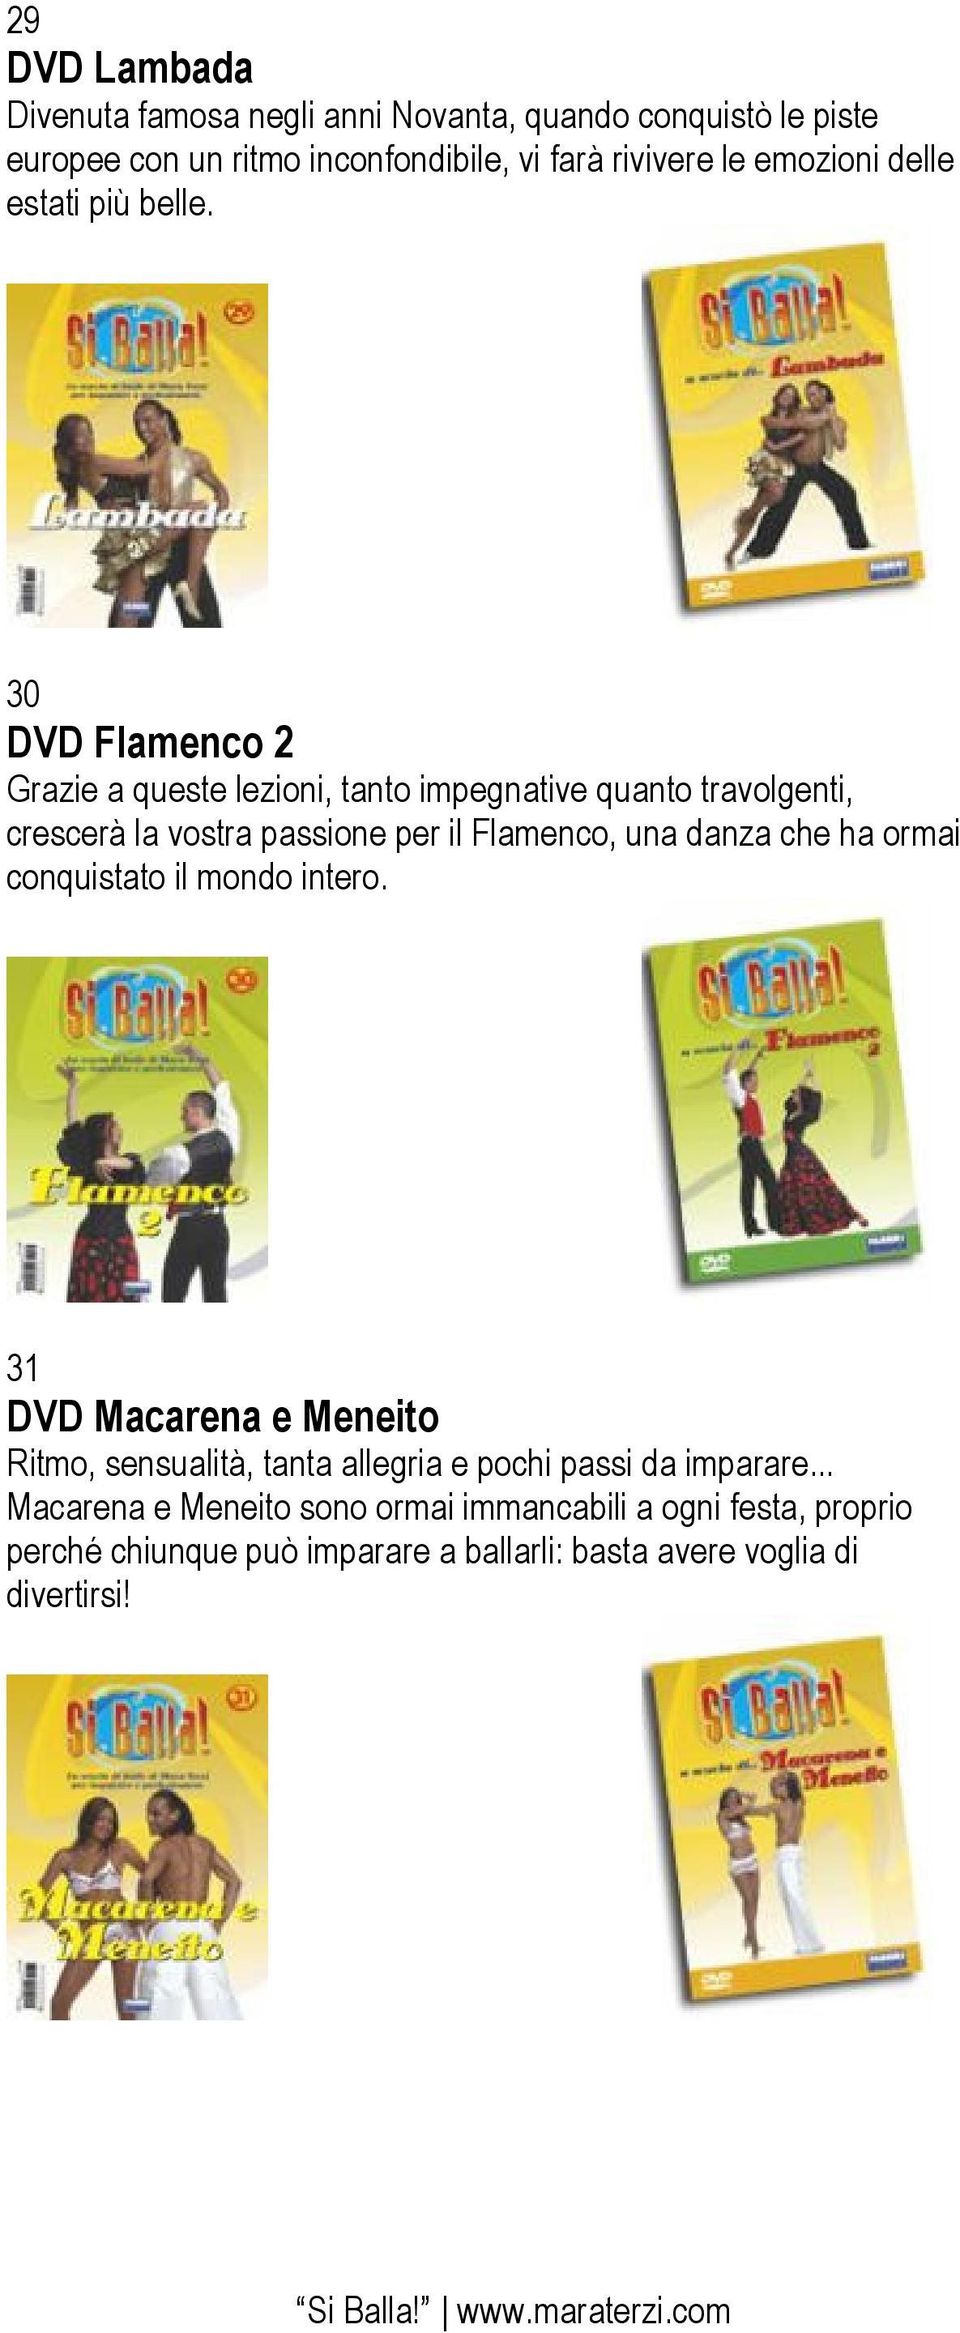 30 DVD Flamenco 2 Grazie a queste lezioni, tanto impegnative quanto travolgenti, crescerà la vostra passione per il Flamenco, una danza che ha